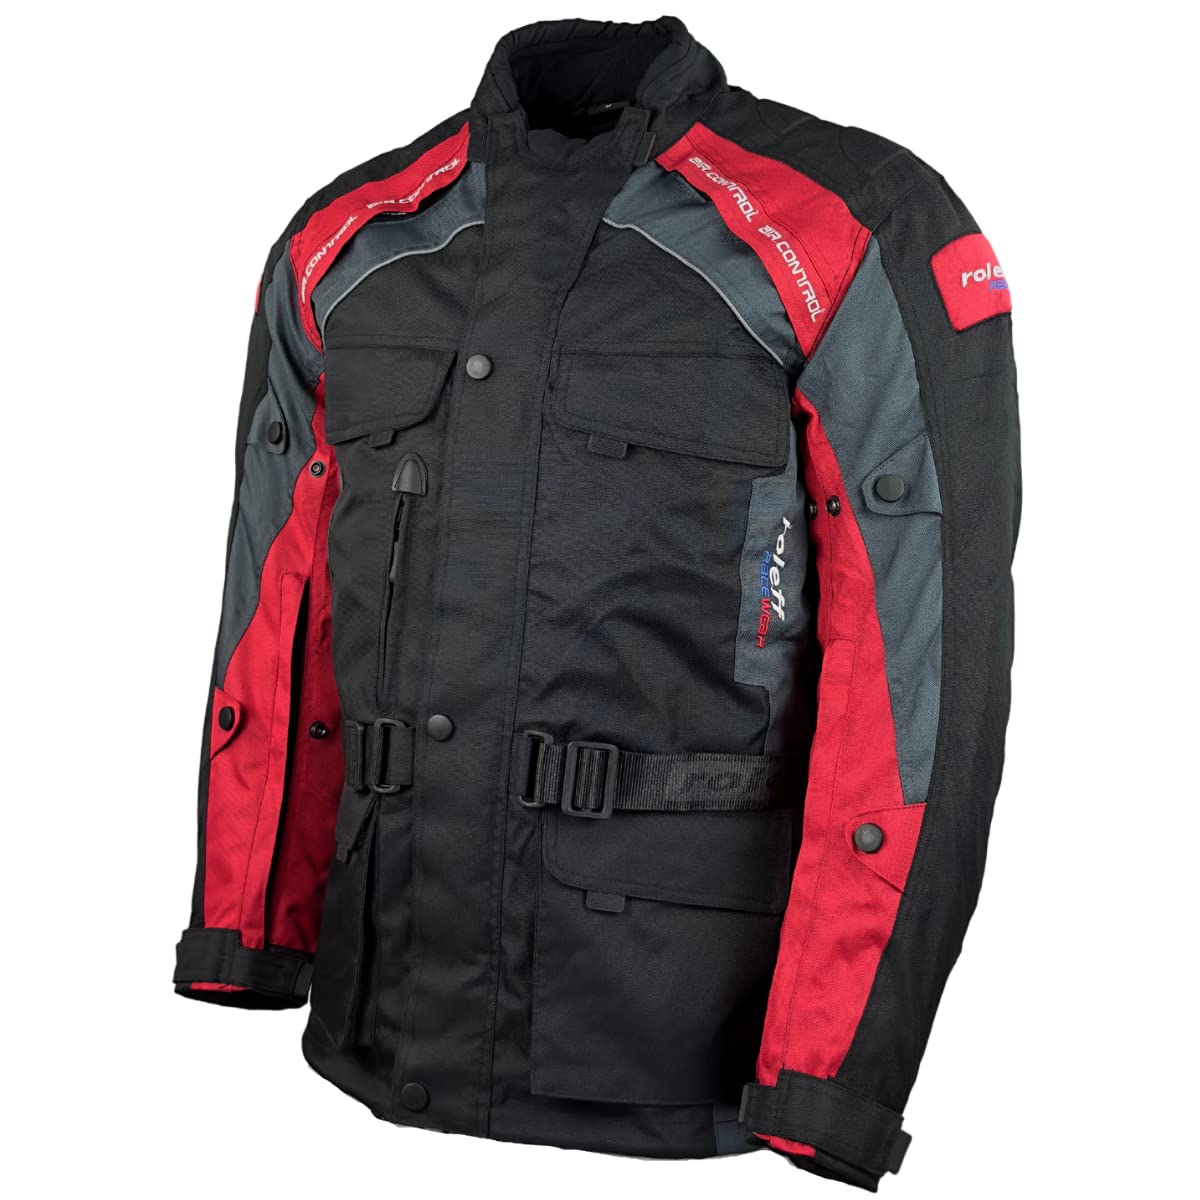 Motorradjacke Herren mit CE Protektoren Regenmembrane Thermofutter Textil Motorrad Jacke von Roleff